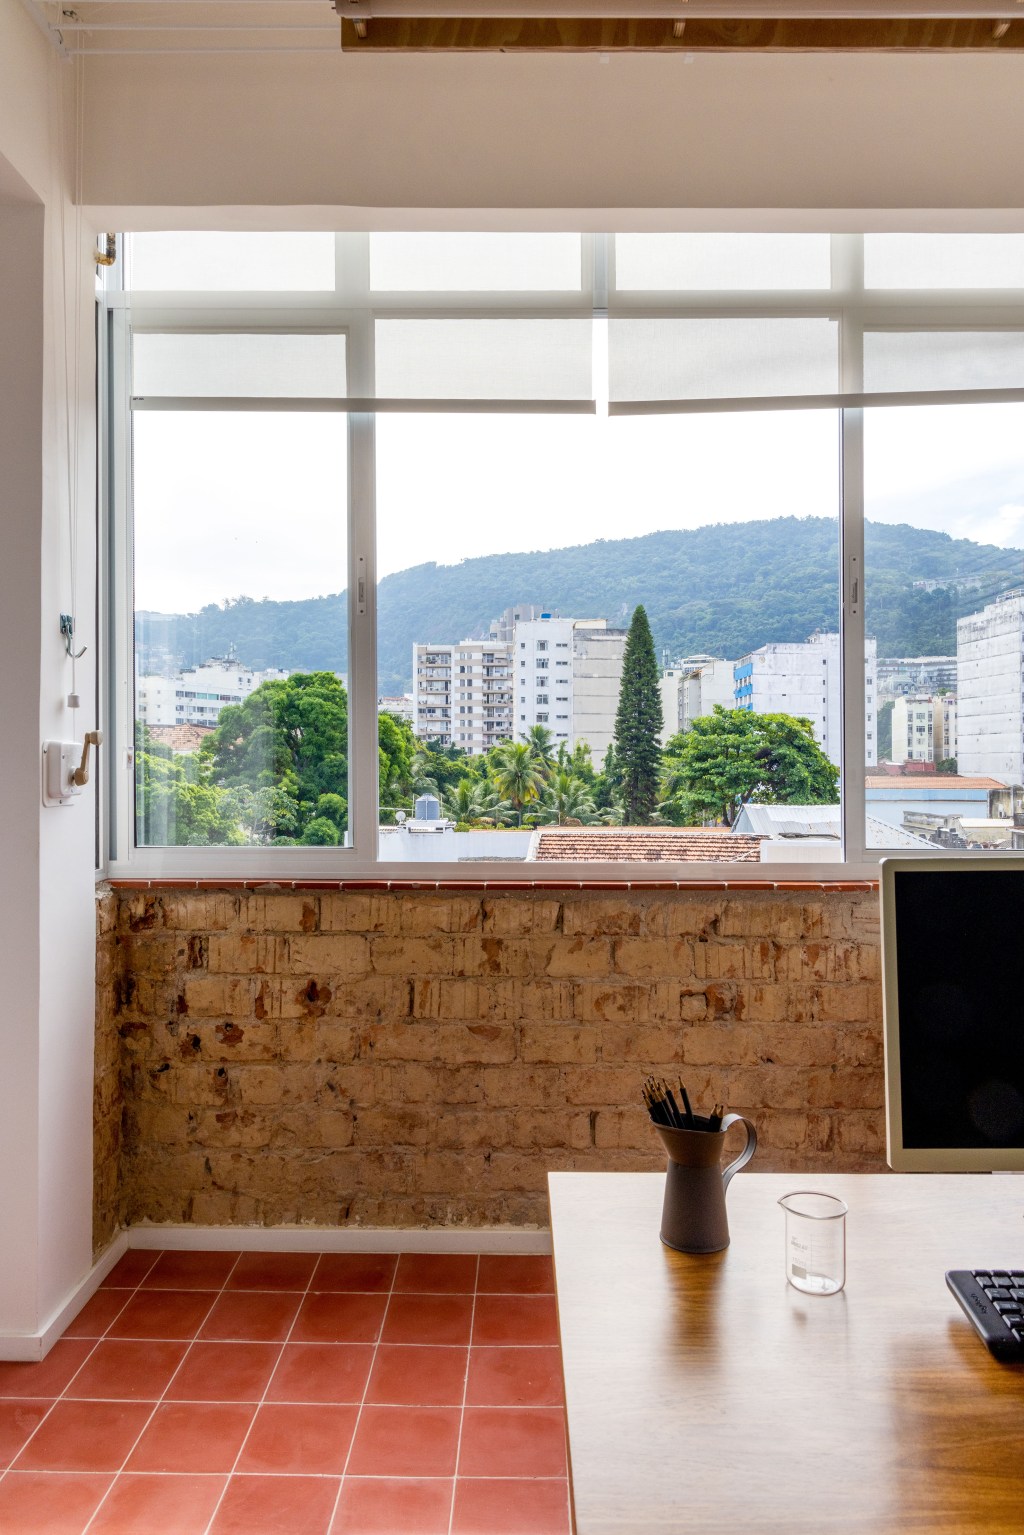 Apê de 90 m² ganha cara de casa com revestimentos charmosos e cores. Projeto Ana Neri. Na foto, home office com parede verde e prateleiras.